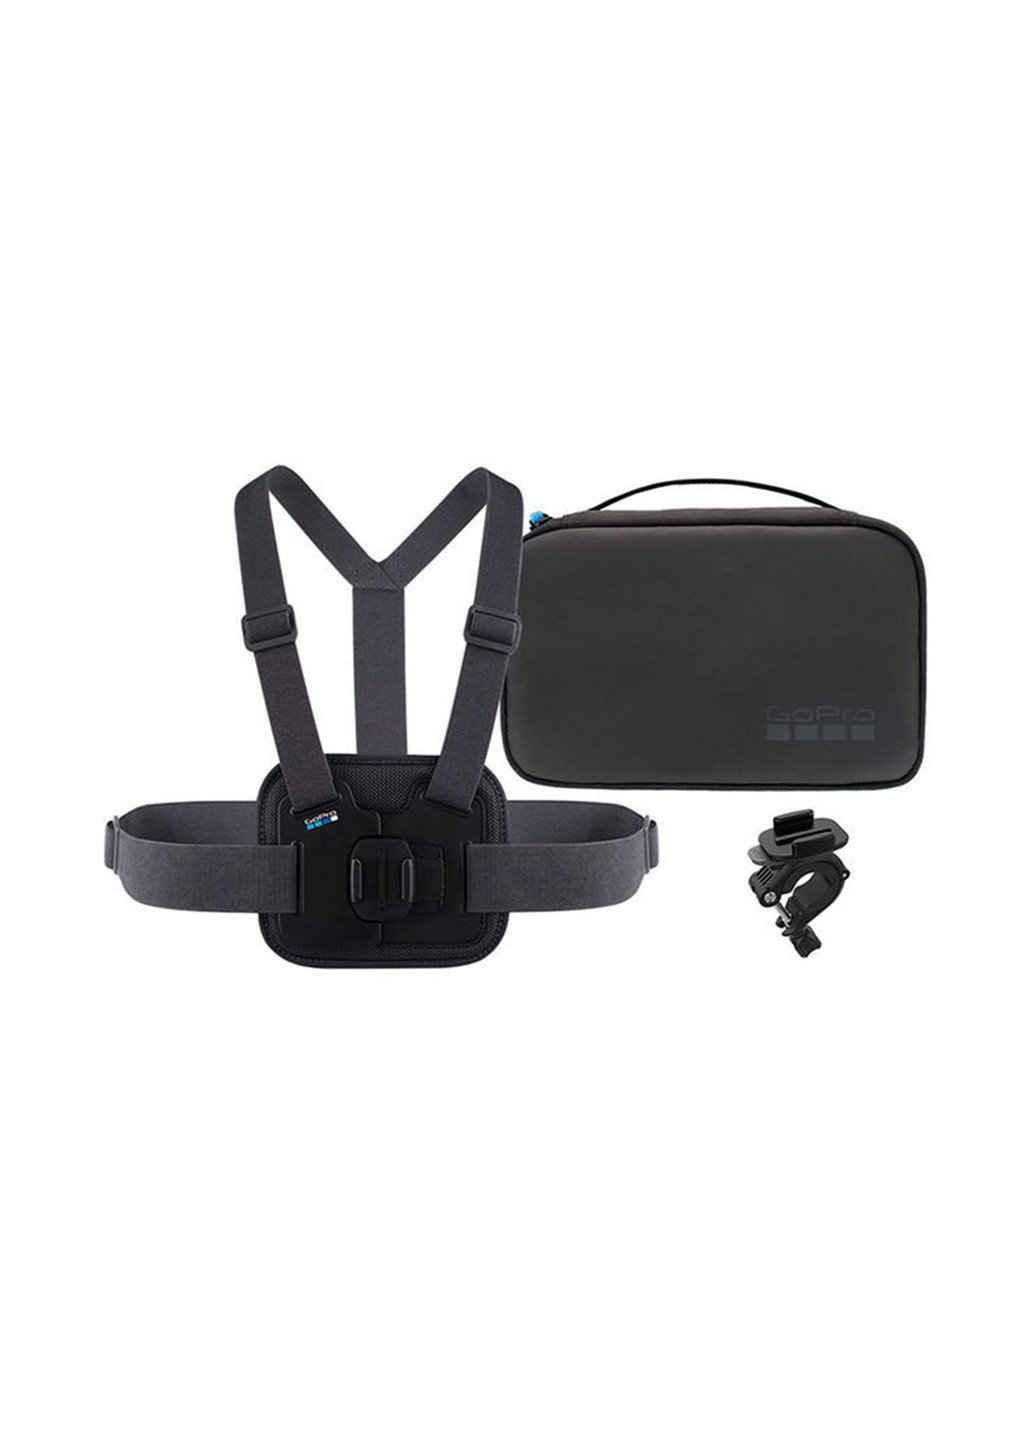 Комплект тримачів для екшн-камери Sports Kit (AKTAC-001) GOPRO держателей для экшн-камеры sports kit (aktac-001) (141278833)